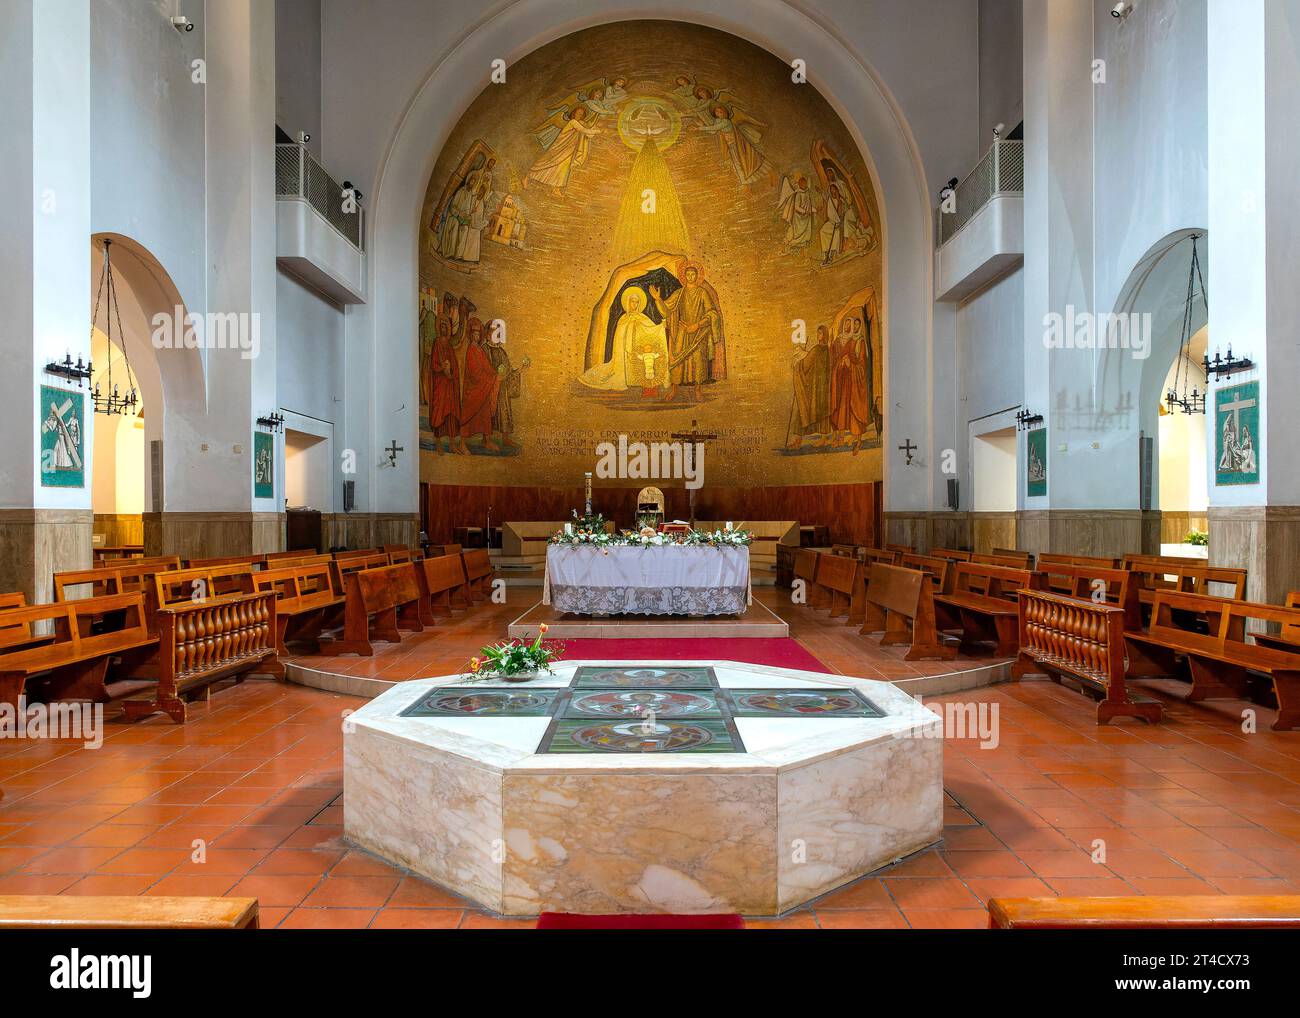 Das Innere der Geburtskirche unseres Herrn Jesus Christus, Rom, Italien Stockfoto